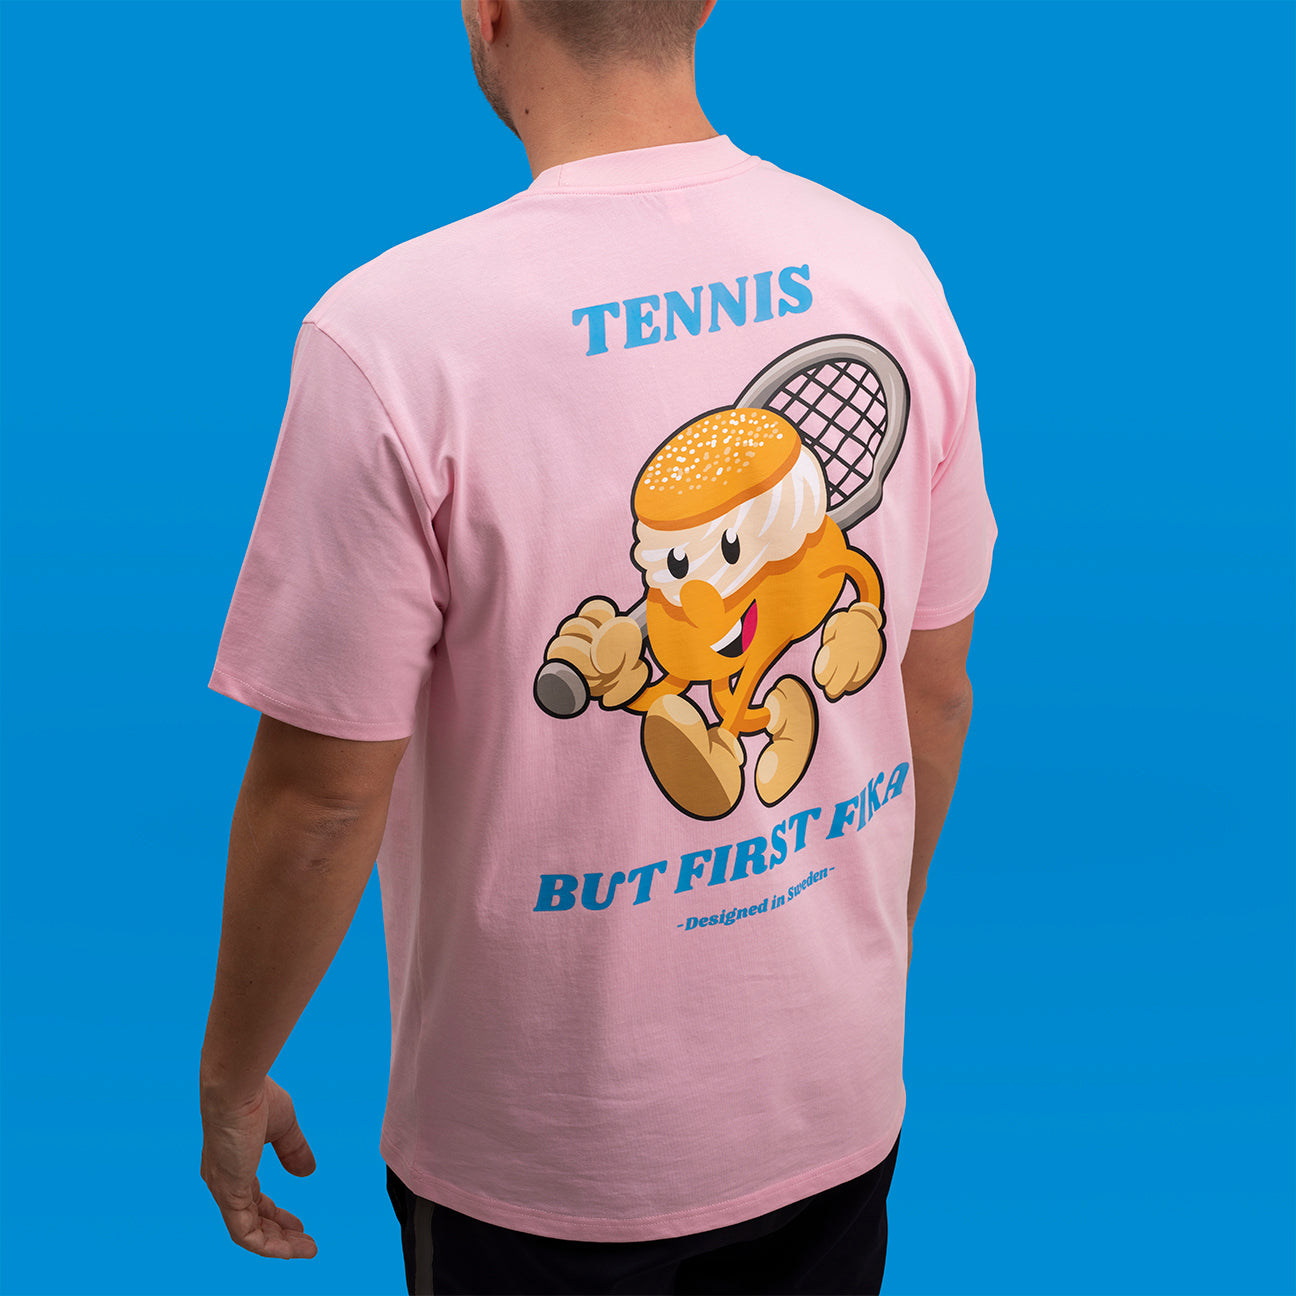 Tennis-Semla-T-Shirt